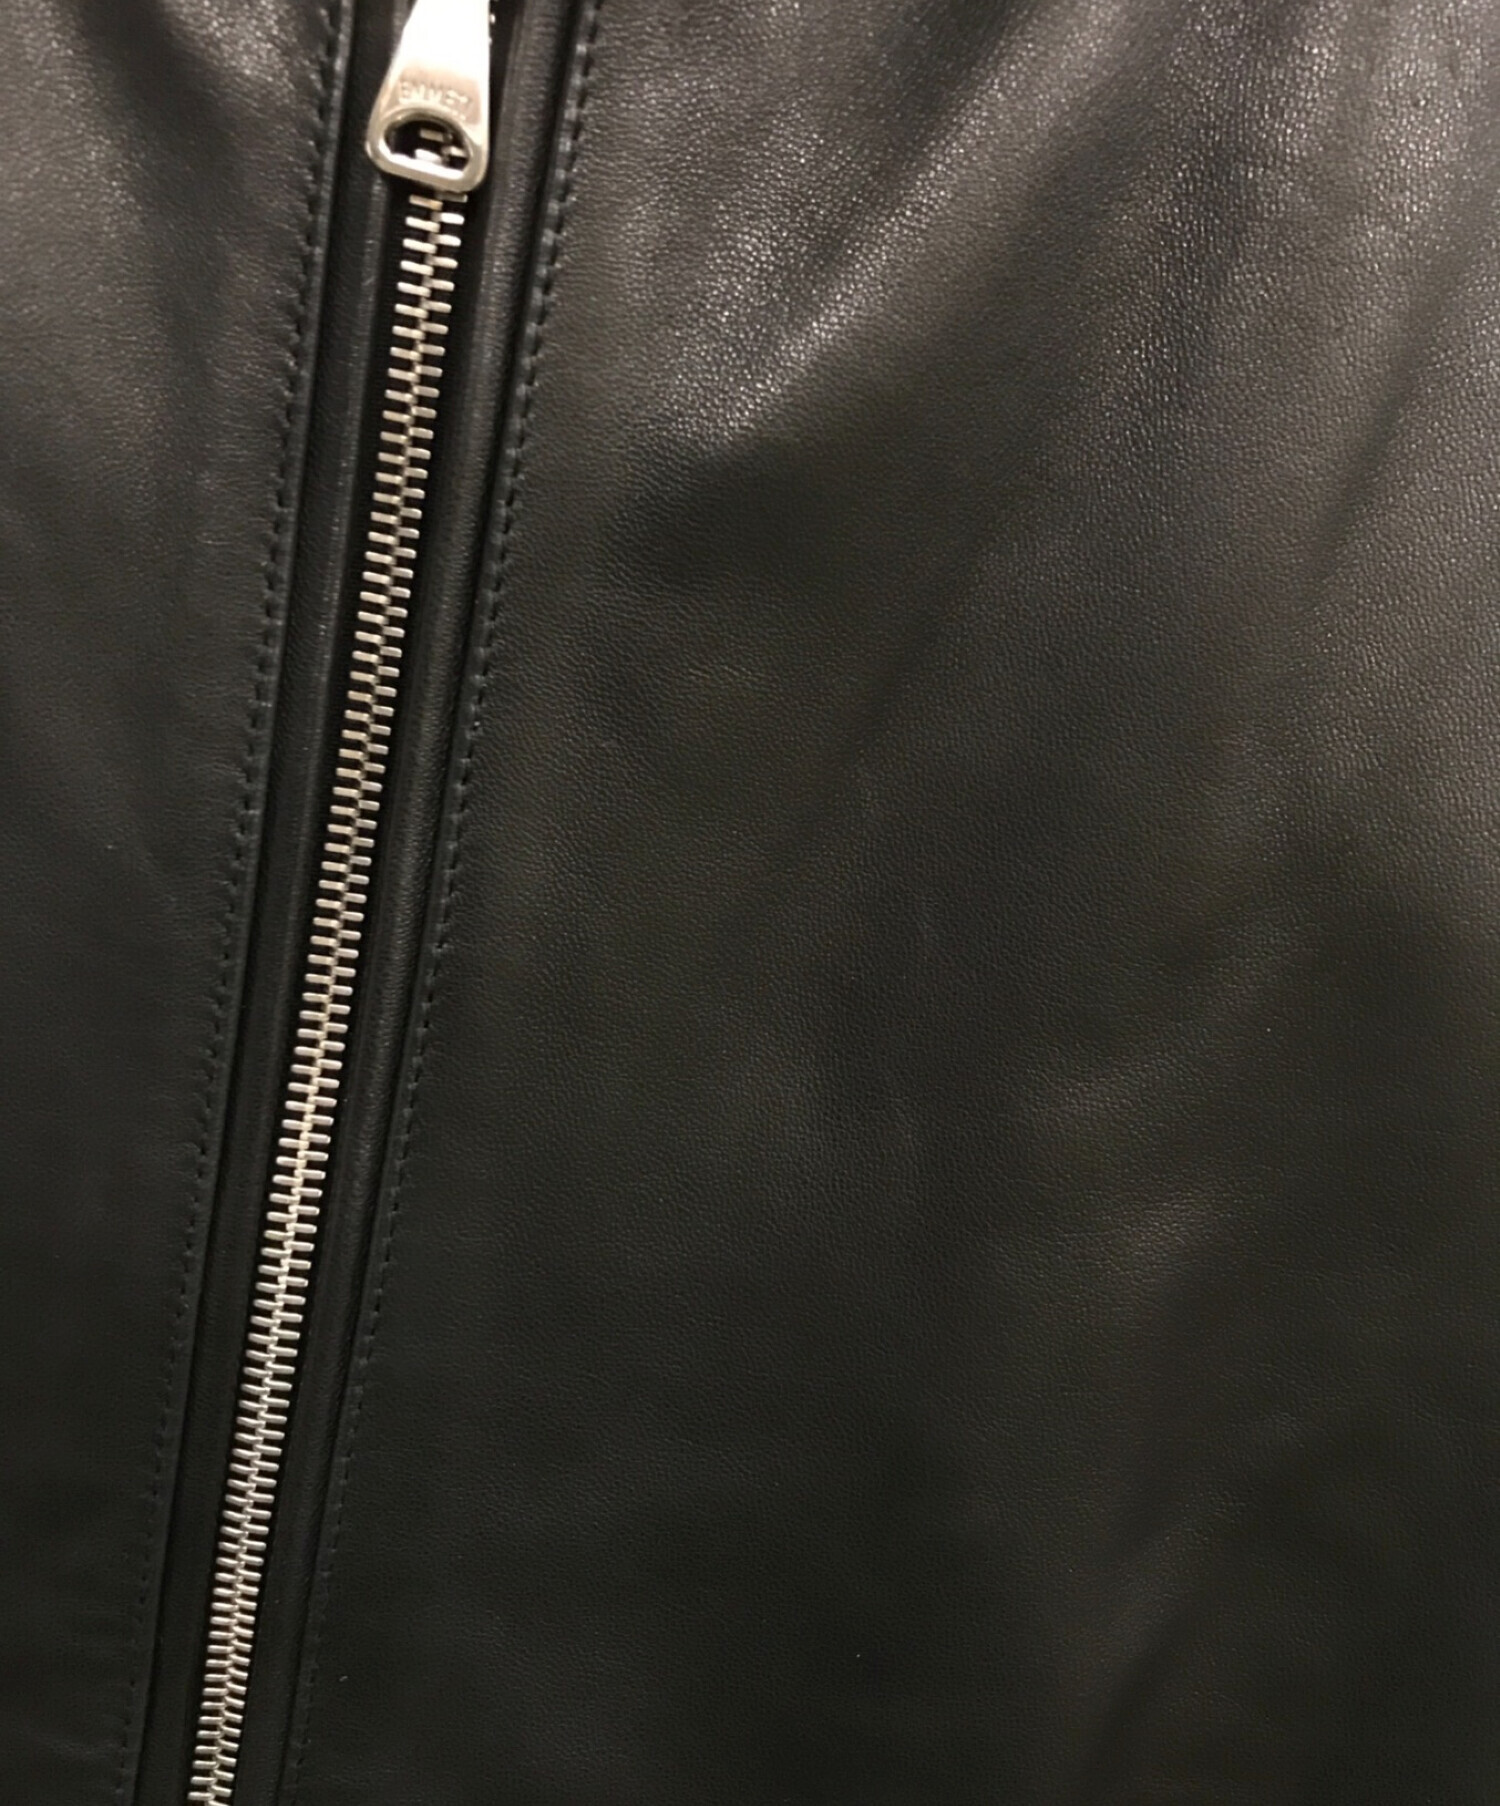 EMMETI (エンメティ) ANDREAラムスキンシングルライダースジャケット ブラック サイズ:46